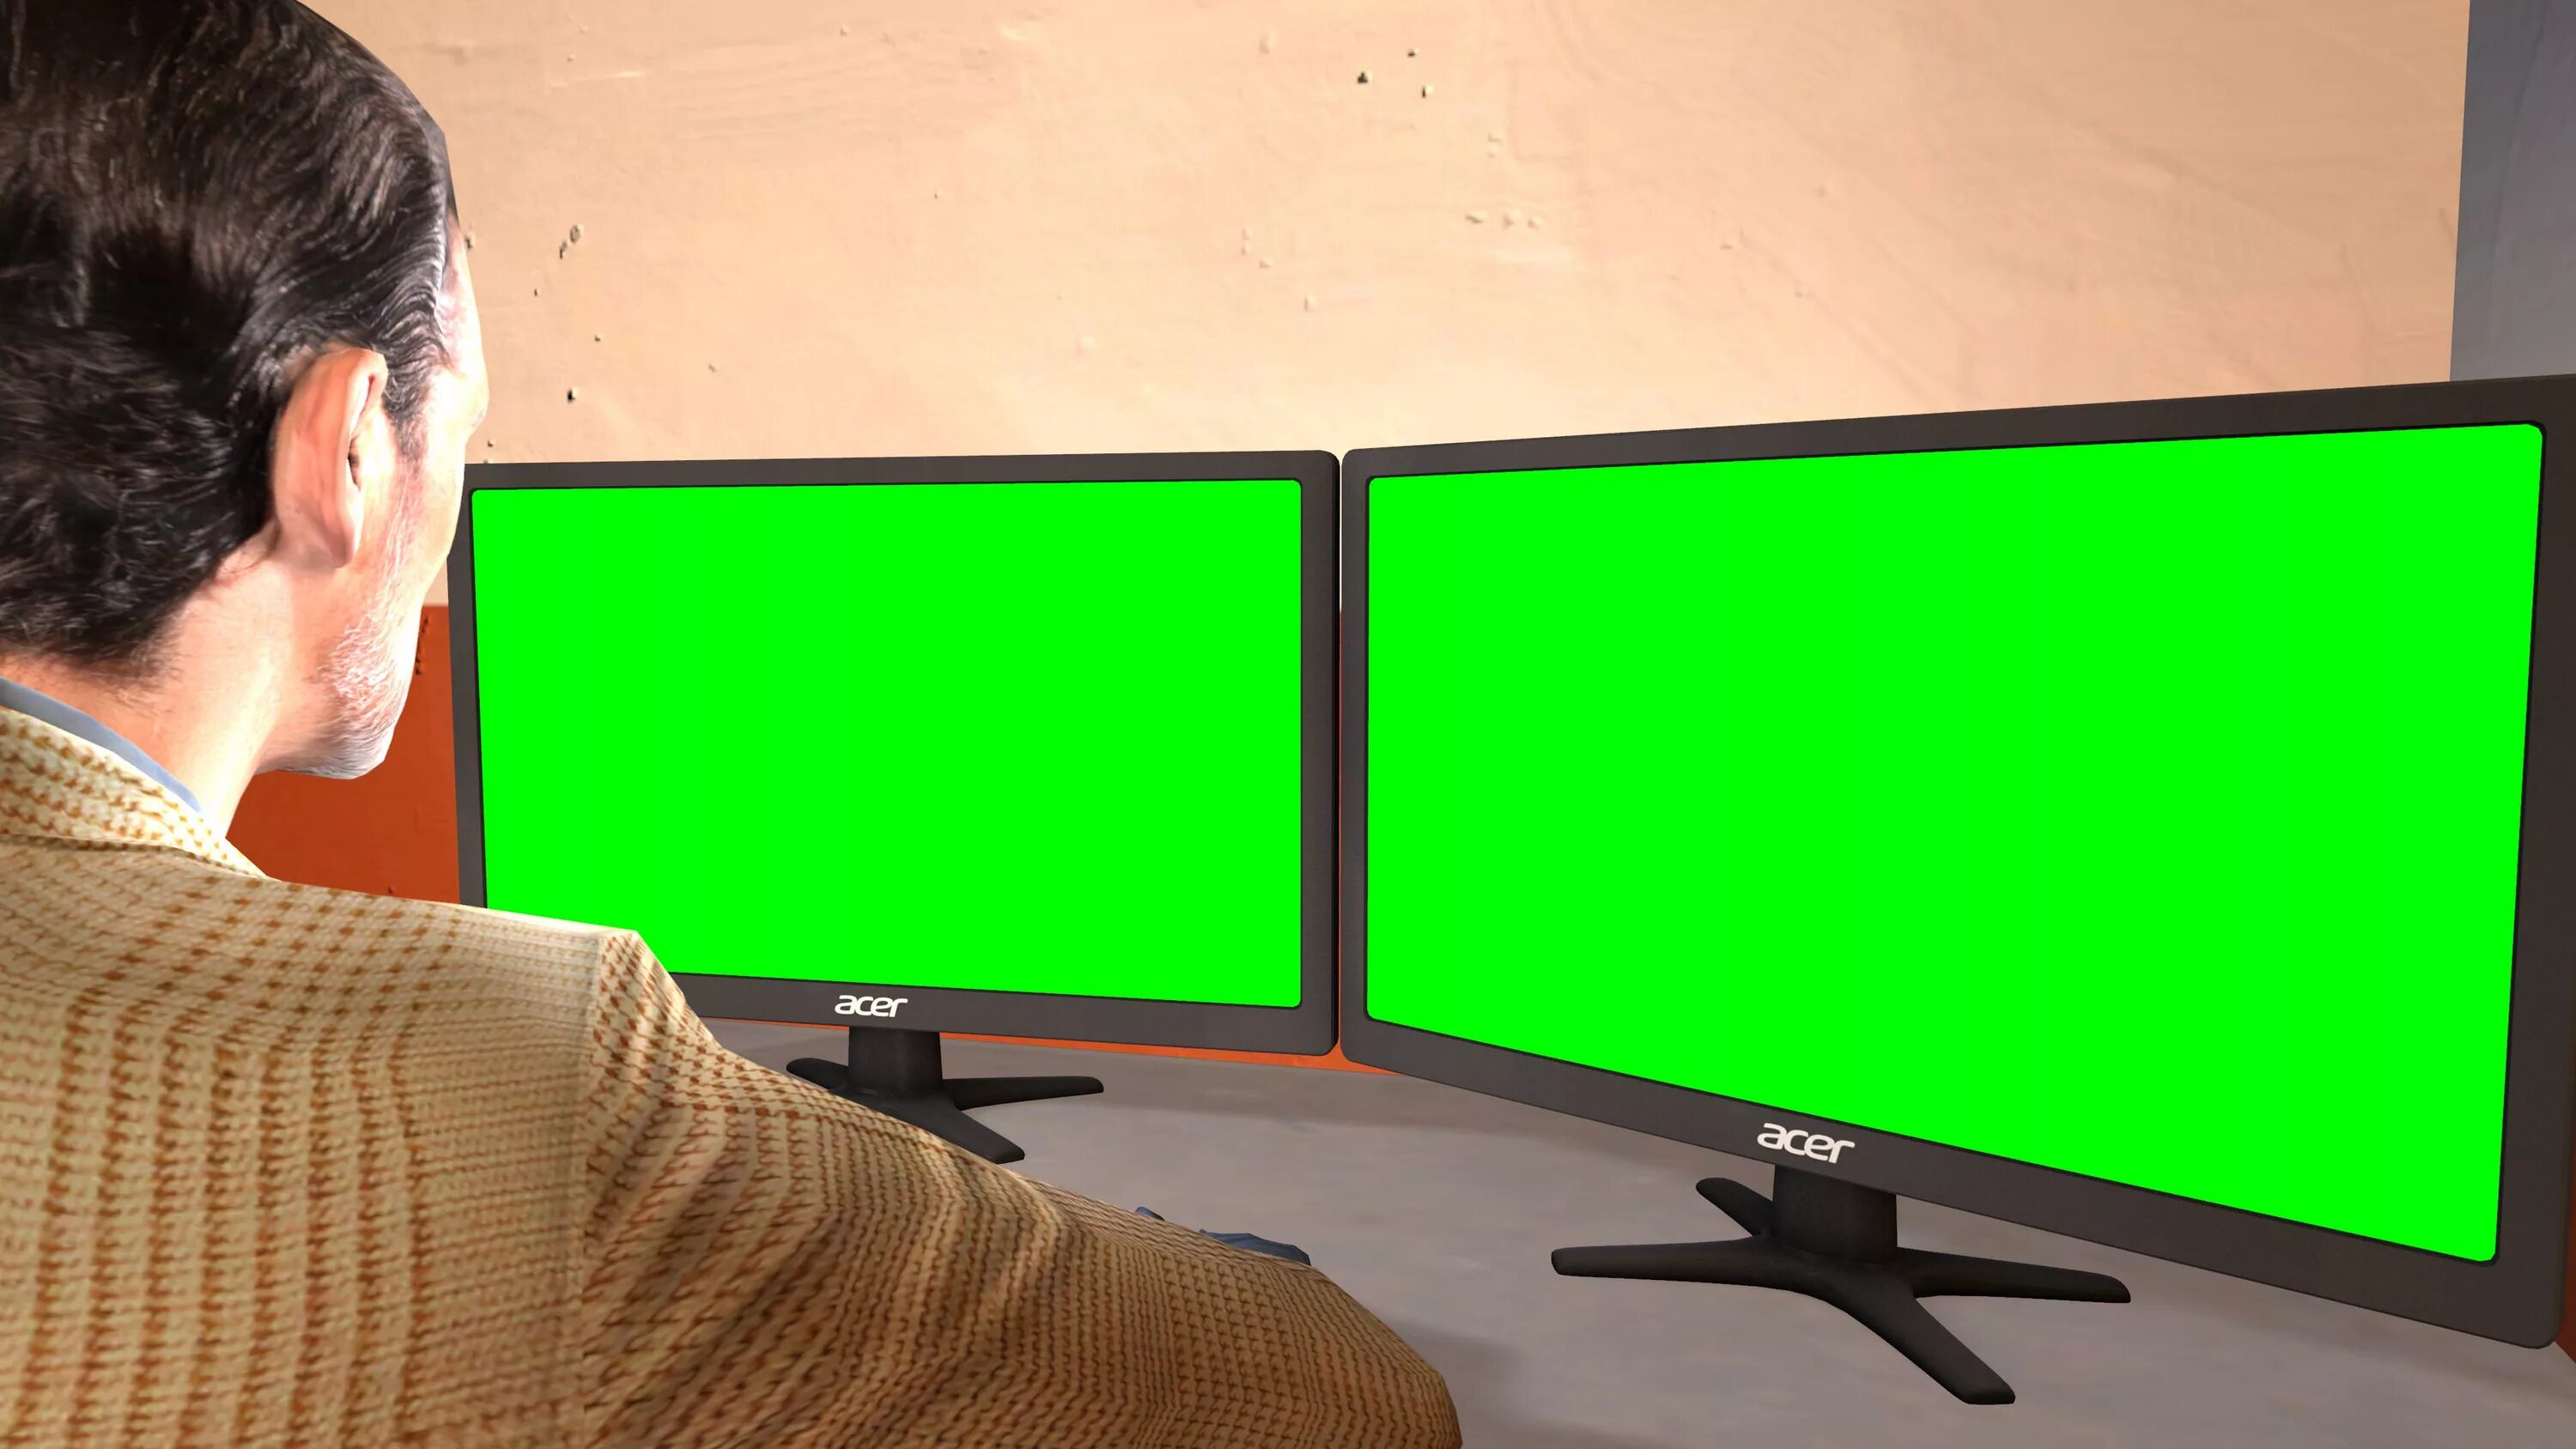 Окна на экране монитора. Зеленый монитор. Монитор Green Screen. Зеленый экран. Понитор с зелёным экраном.